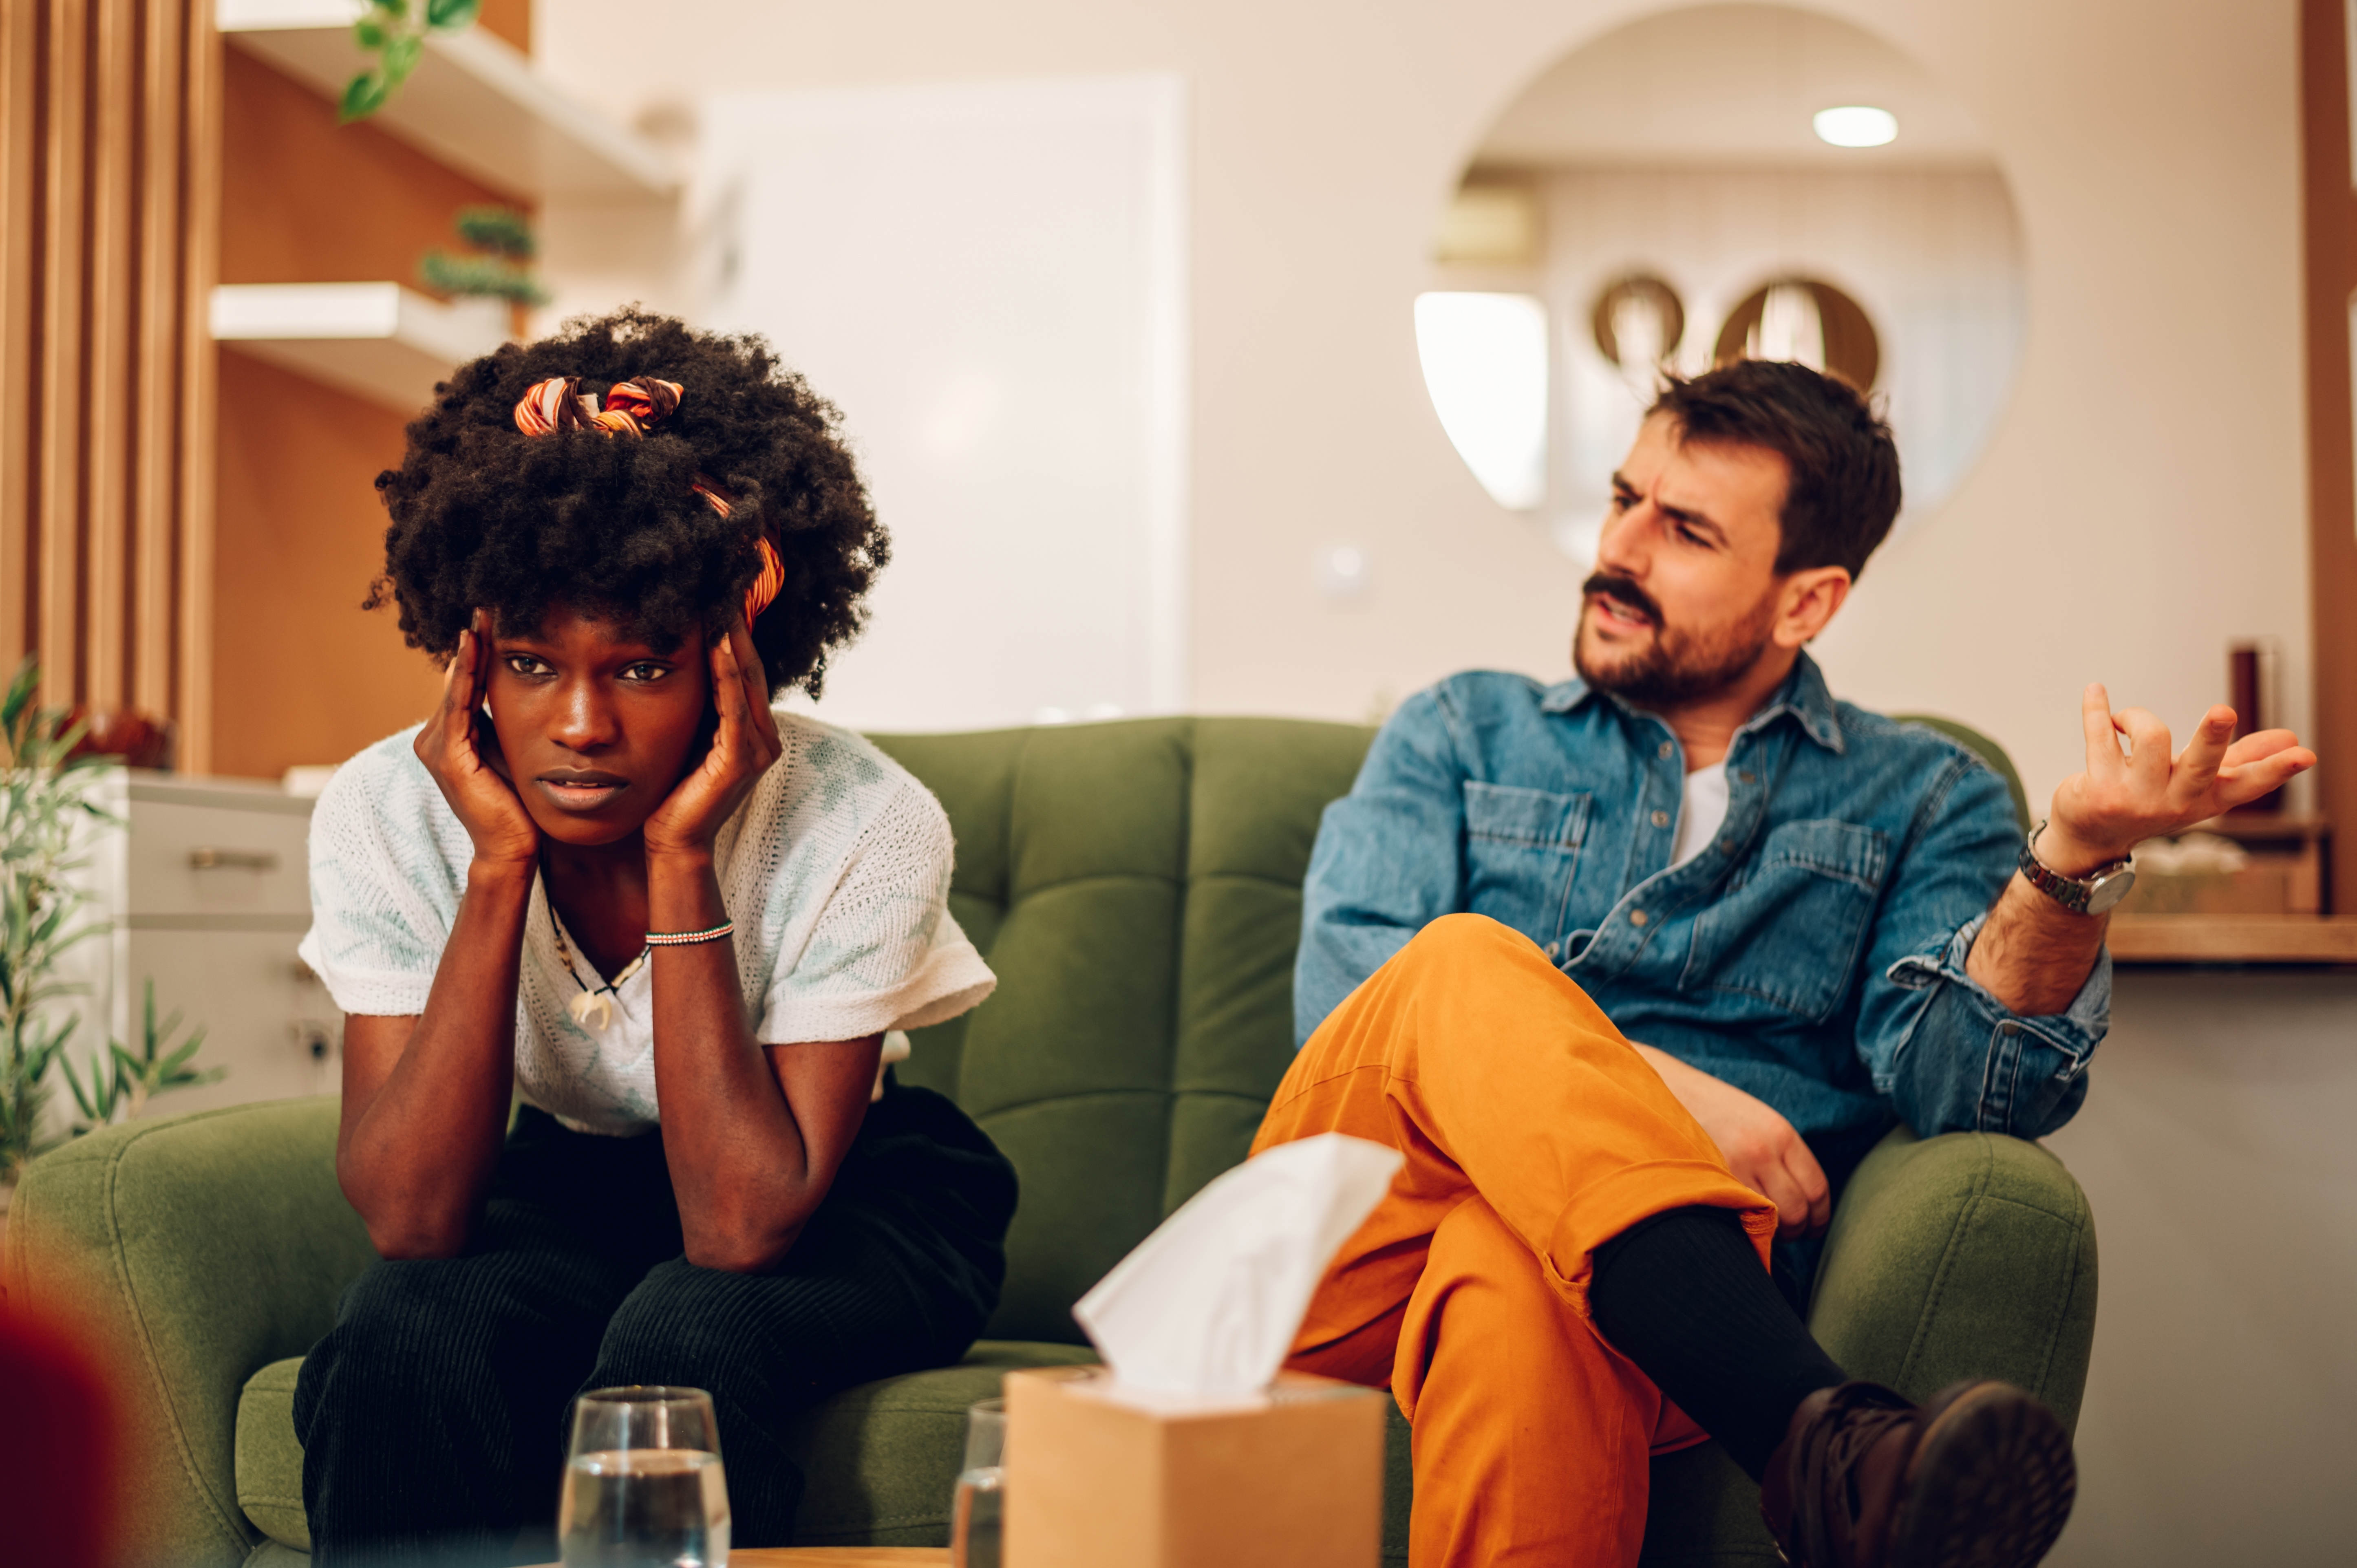 Un homme blanc et une femme noire ayant un désaccord alors qu'ils sont assis sur un canapé | Source : Shutterstock